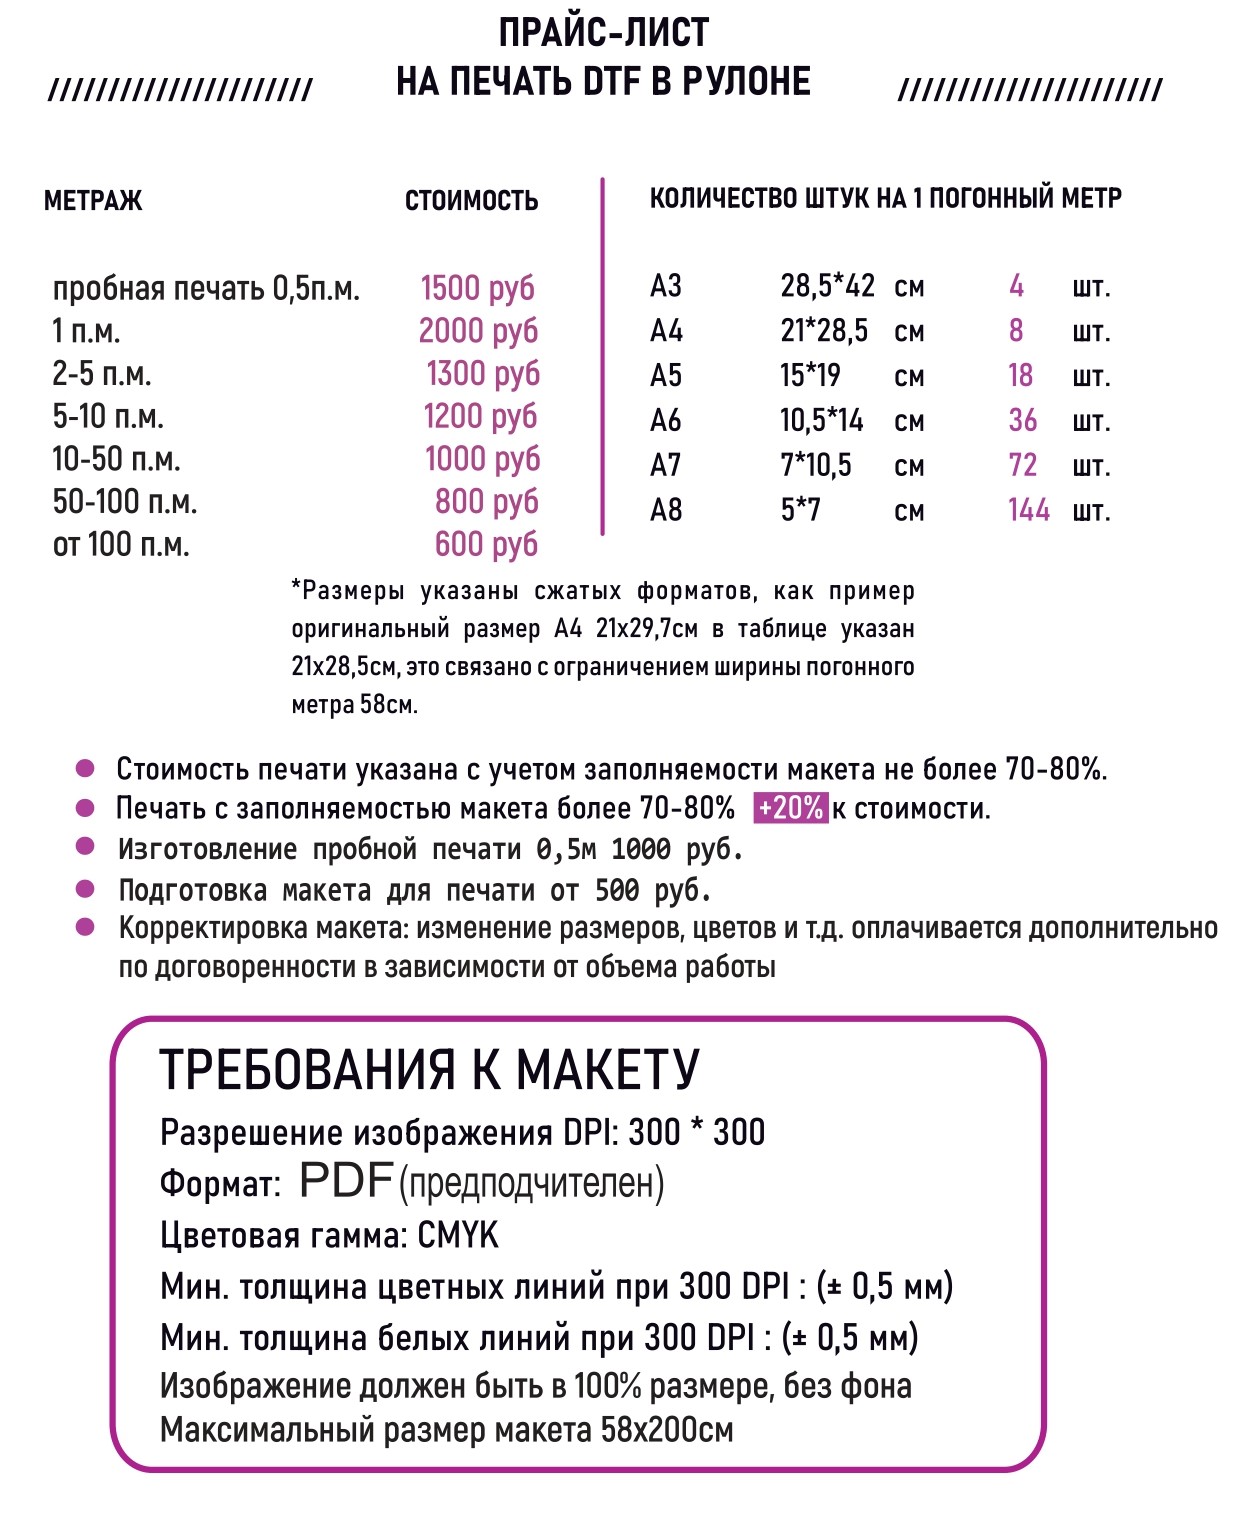 Цены на DTF печать Нижний Новгород